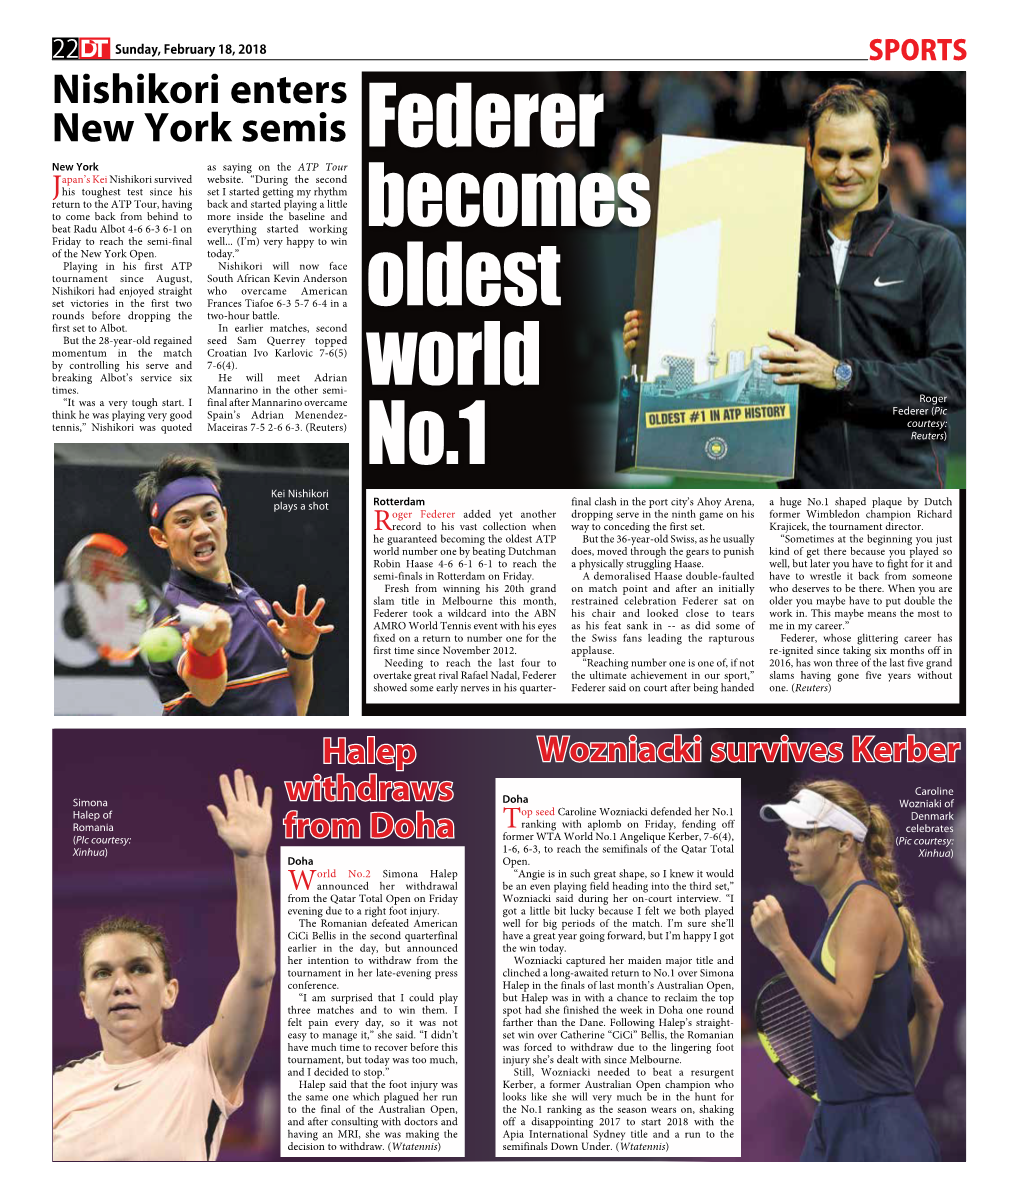 Federer Becomes Oldest World No.1